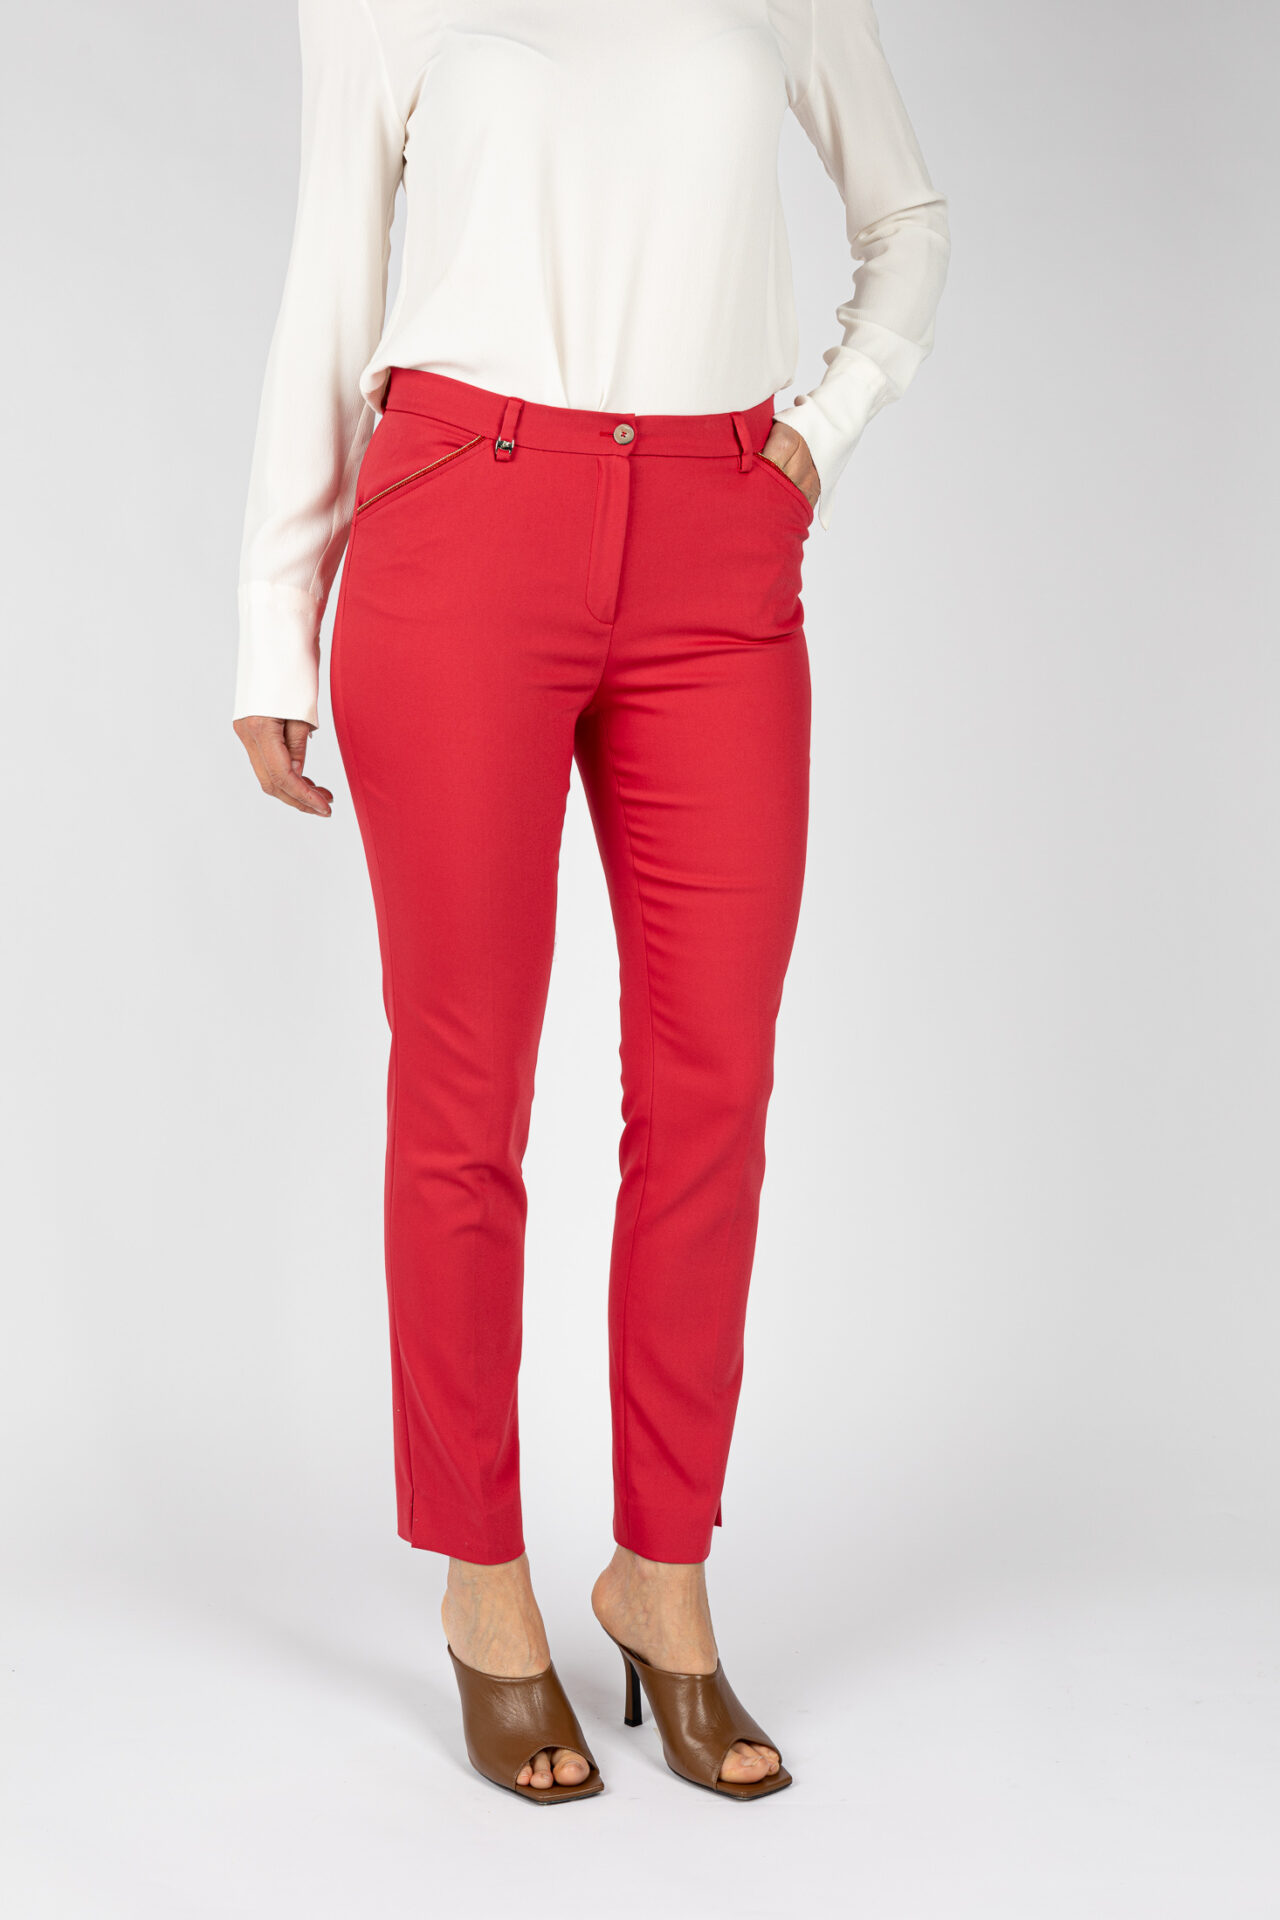 Pantaloni linea a sigaretta, da donna in colore rosso P19642G - 2